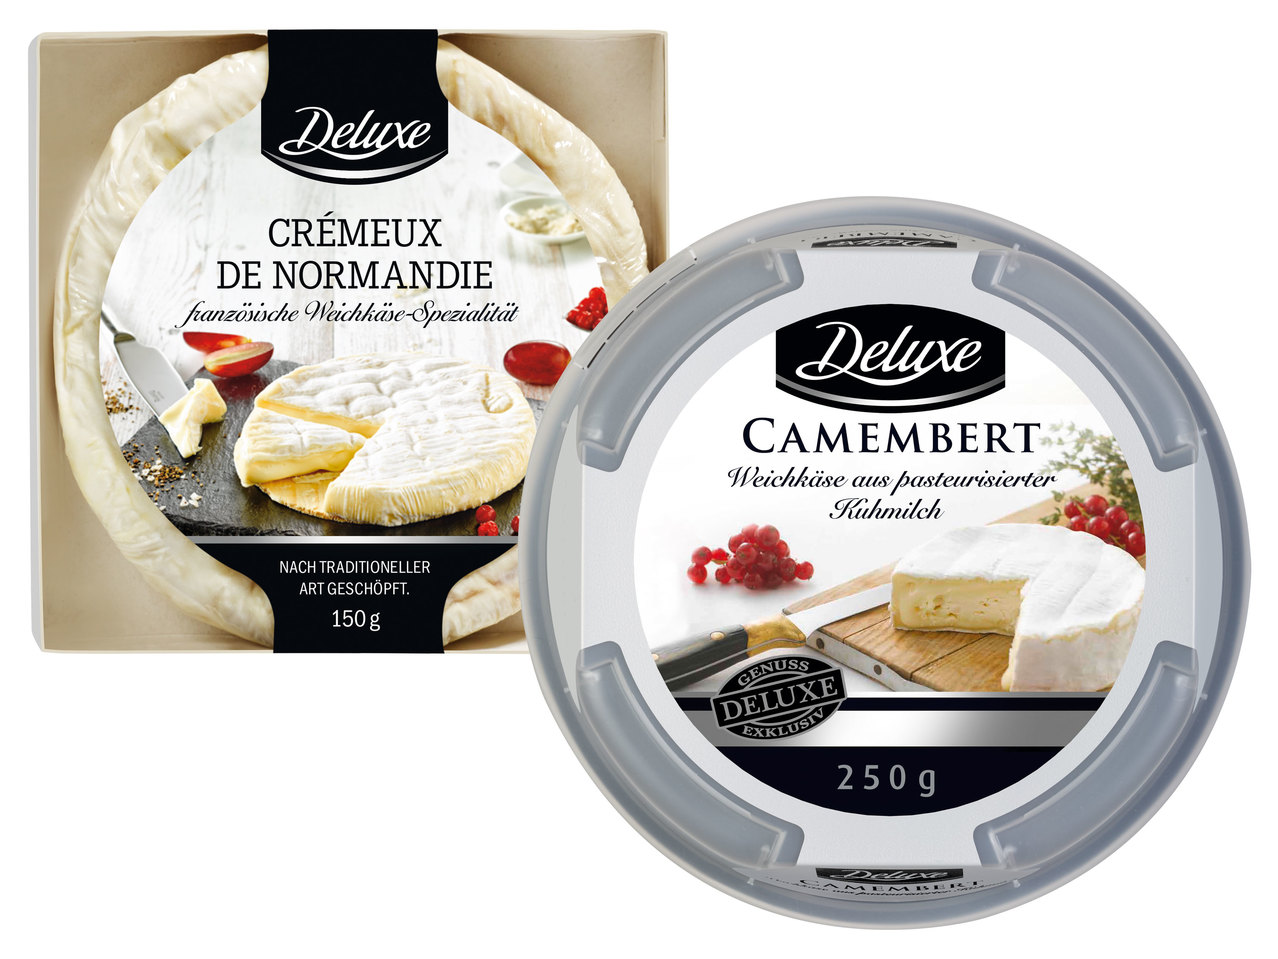 DELUXE Camembert/Crémeux de Normandie